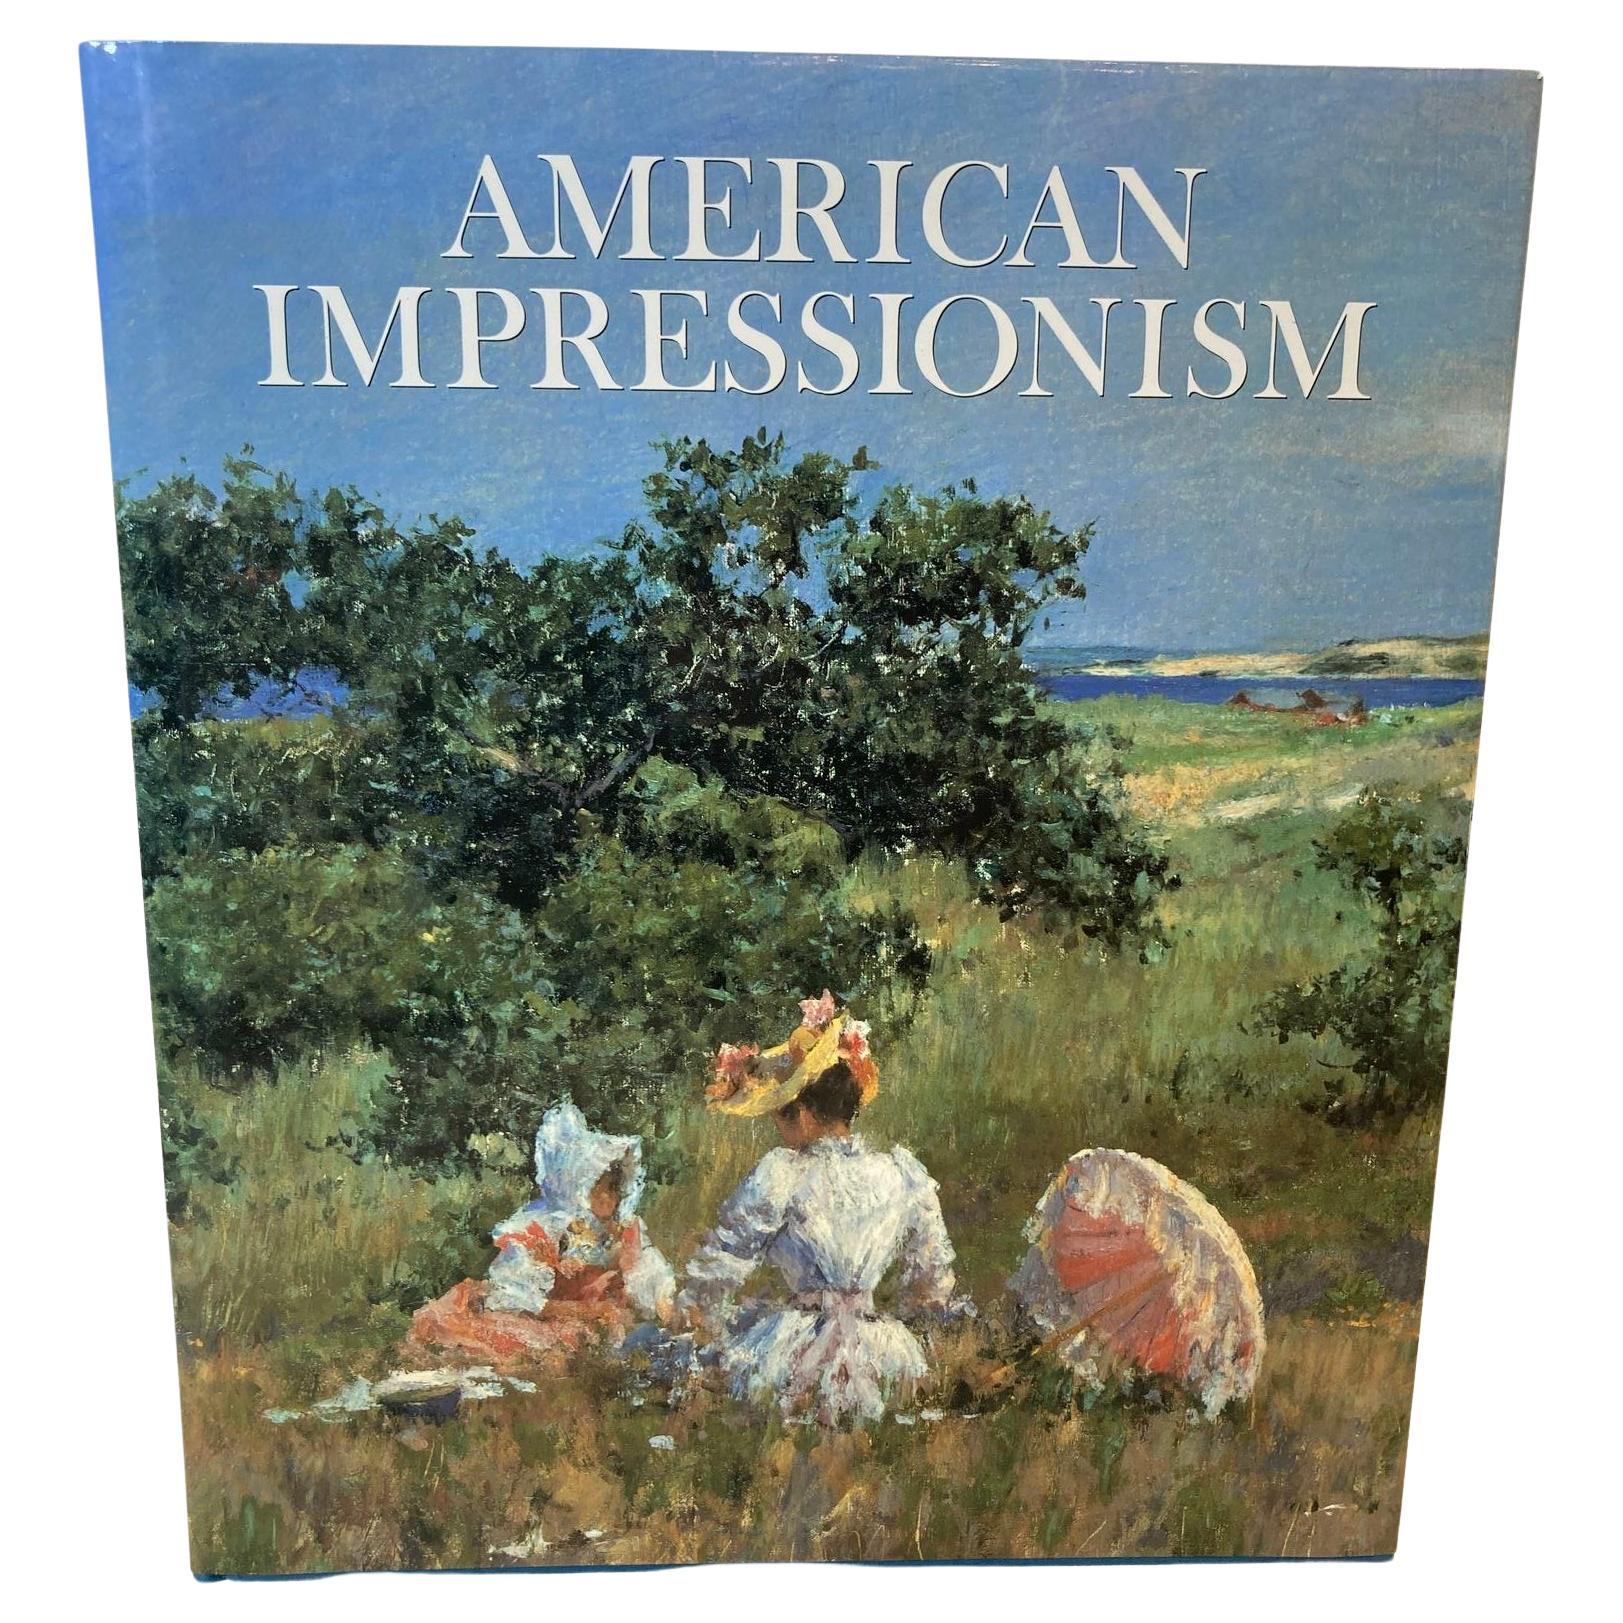 Livre à couverture rigide surdimensionnée de style impressionniste américain de William H. Gerdts